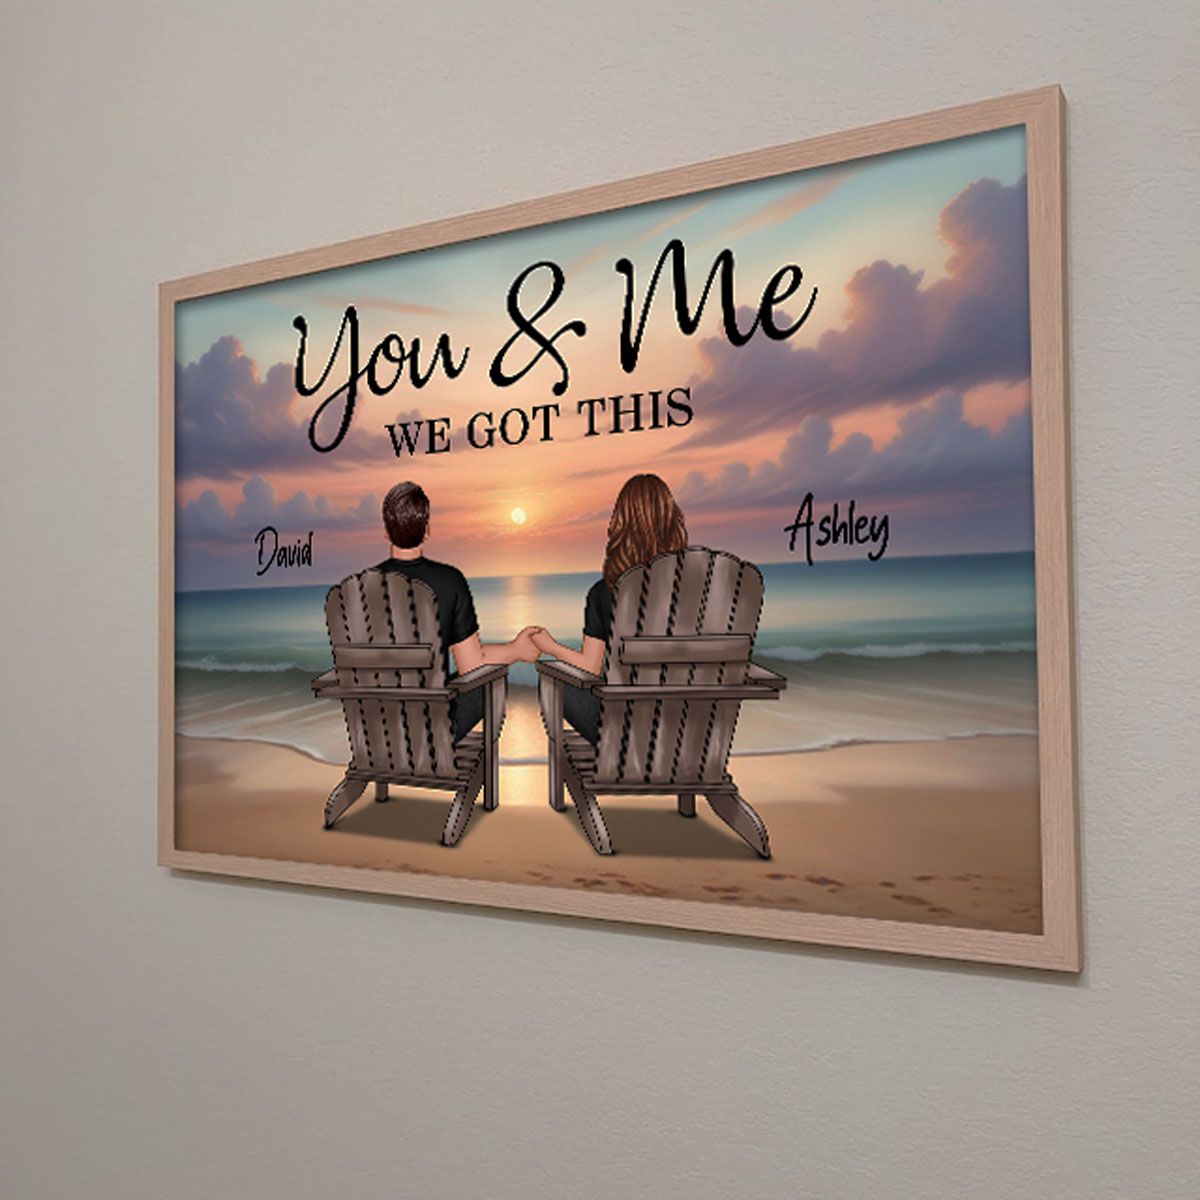 後ろ姿のカップルが座っているビーチの風景 You &amp; Me We Got This Personalized Horizo​​ntal Poster